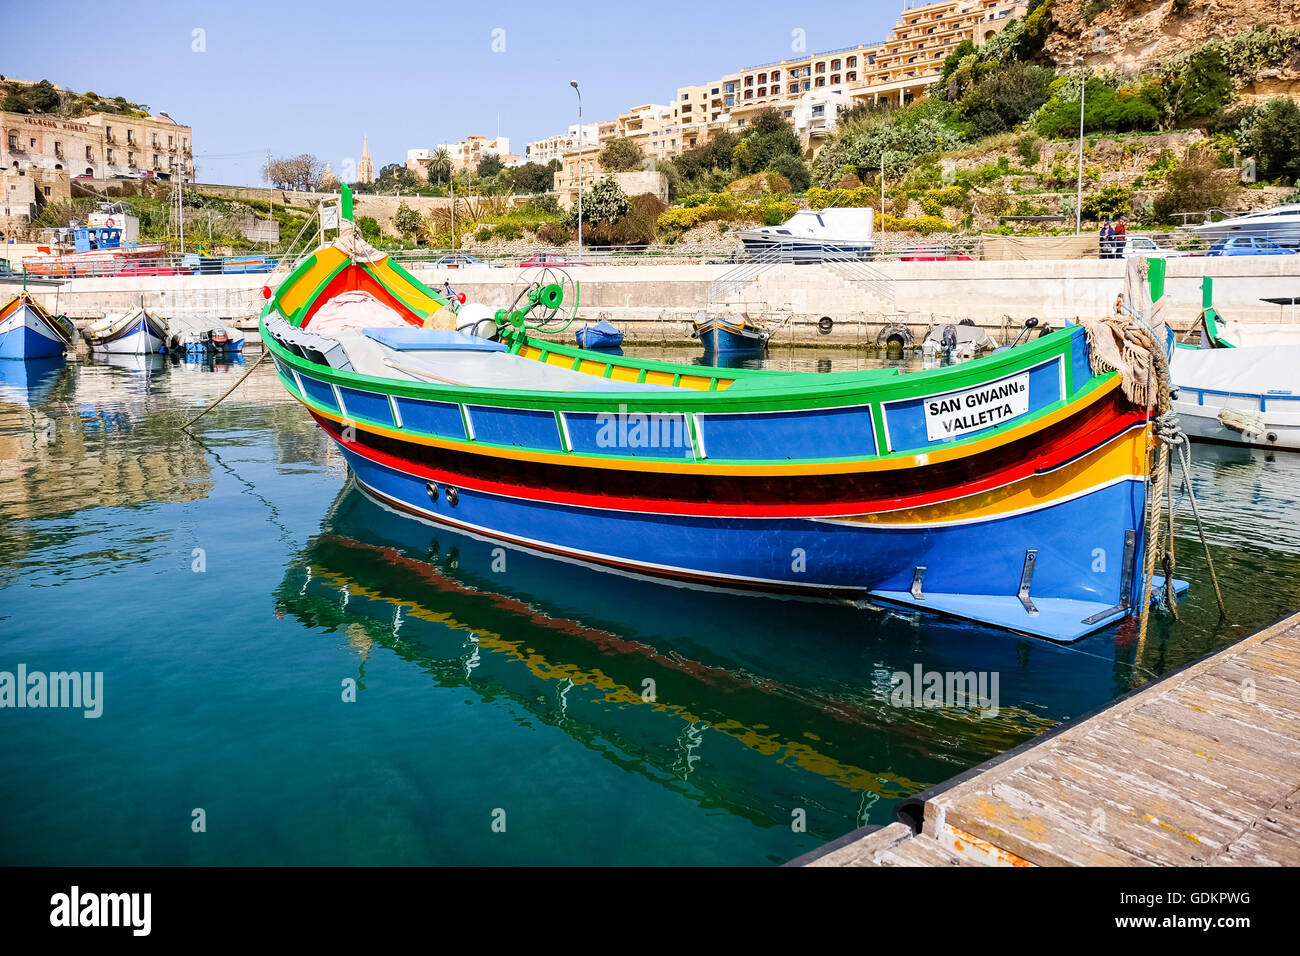 MGARR, GOZO Insel maltesischen Inseln - 17 APRIL, 2015:Marsaxlokk, einem traditionellen maltesischen Dorf Fischerboot, Mgarr, Gozo, Malta Stockfoto